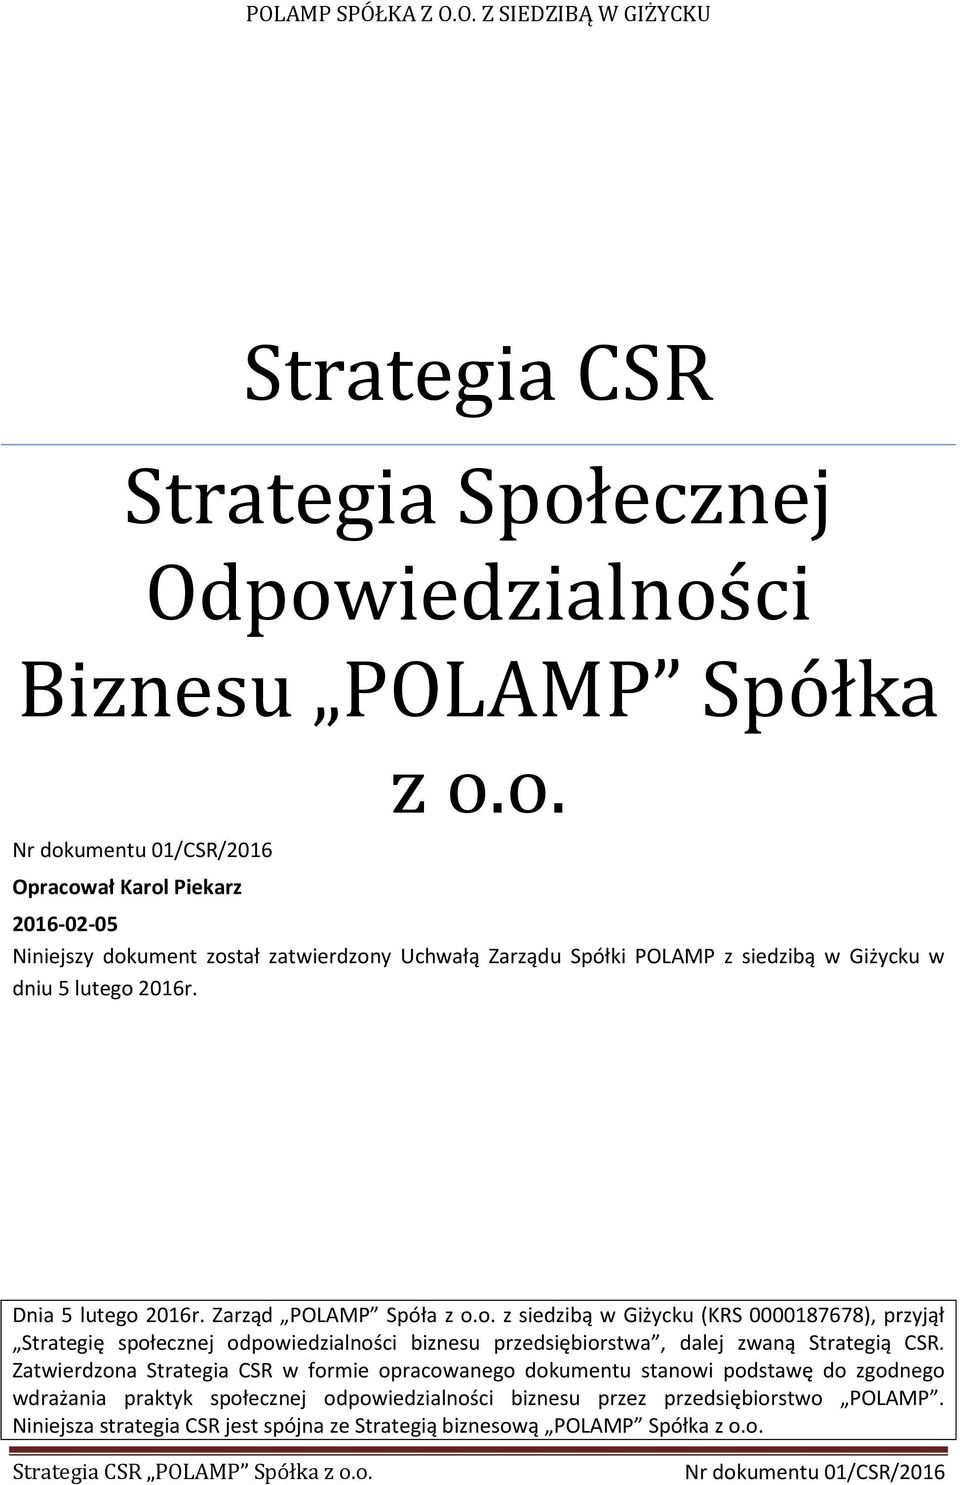 Zatwierdzona Strategia CSR w formie opracowanego dokumentu stanowi podstawę do zgodnego wdrażania praktyk społecznej odpowiedzialności biznesu przez przedsiębiorstwo POLAMP.